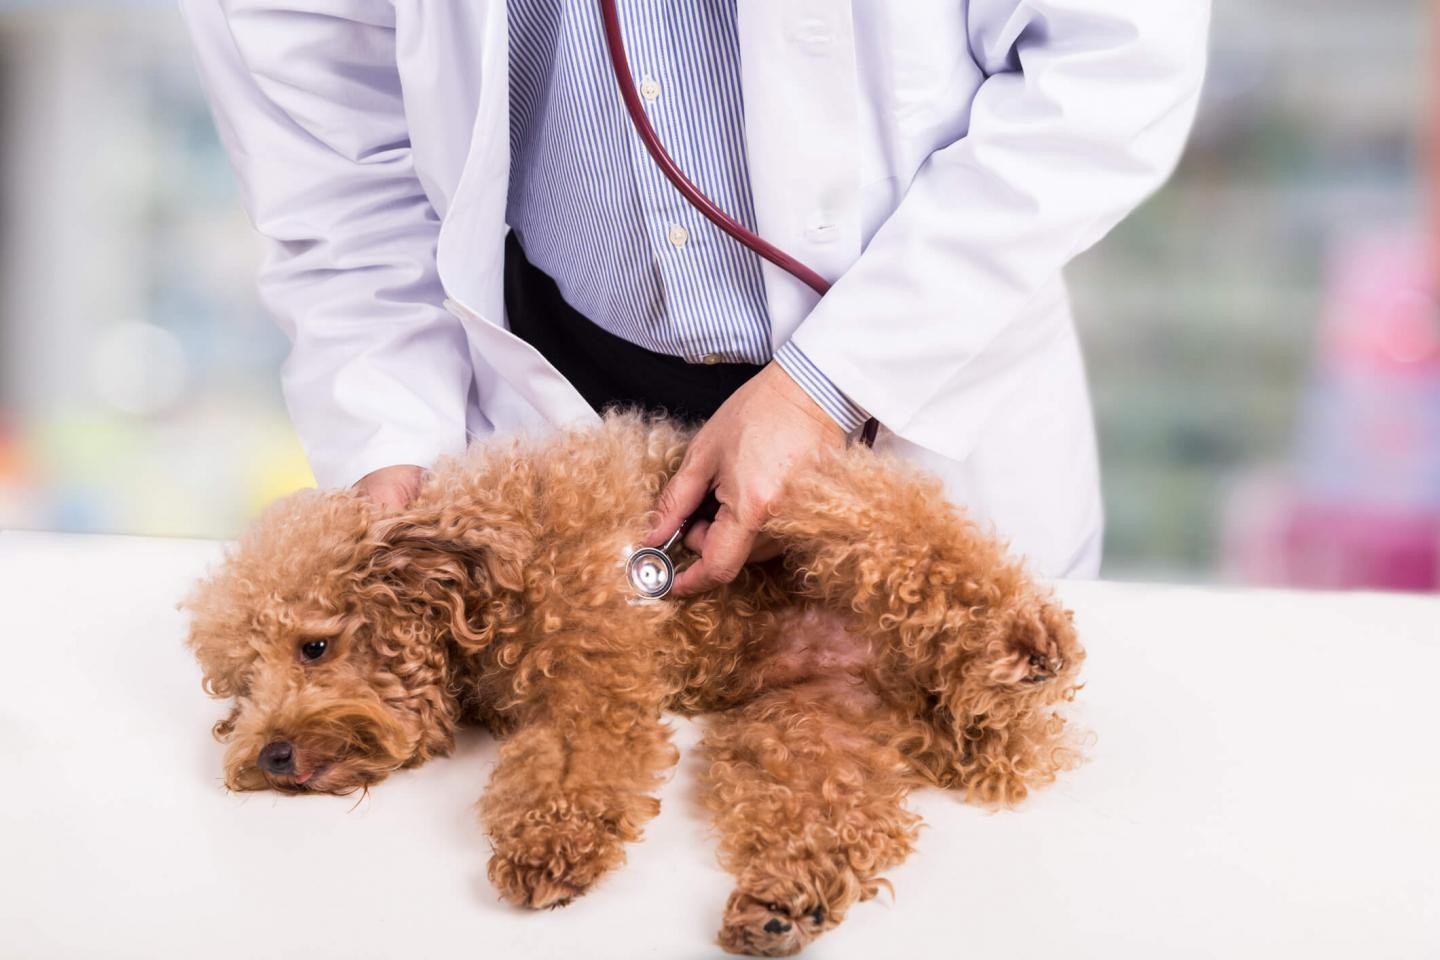 Doença que causa vômito em cães é coronavírus canino  (Foto: Divulgação/Universidade de Lancaster)